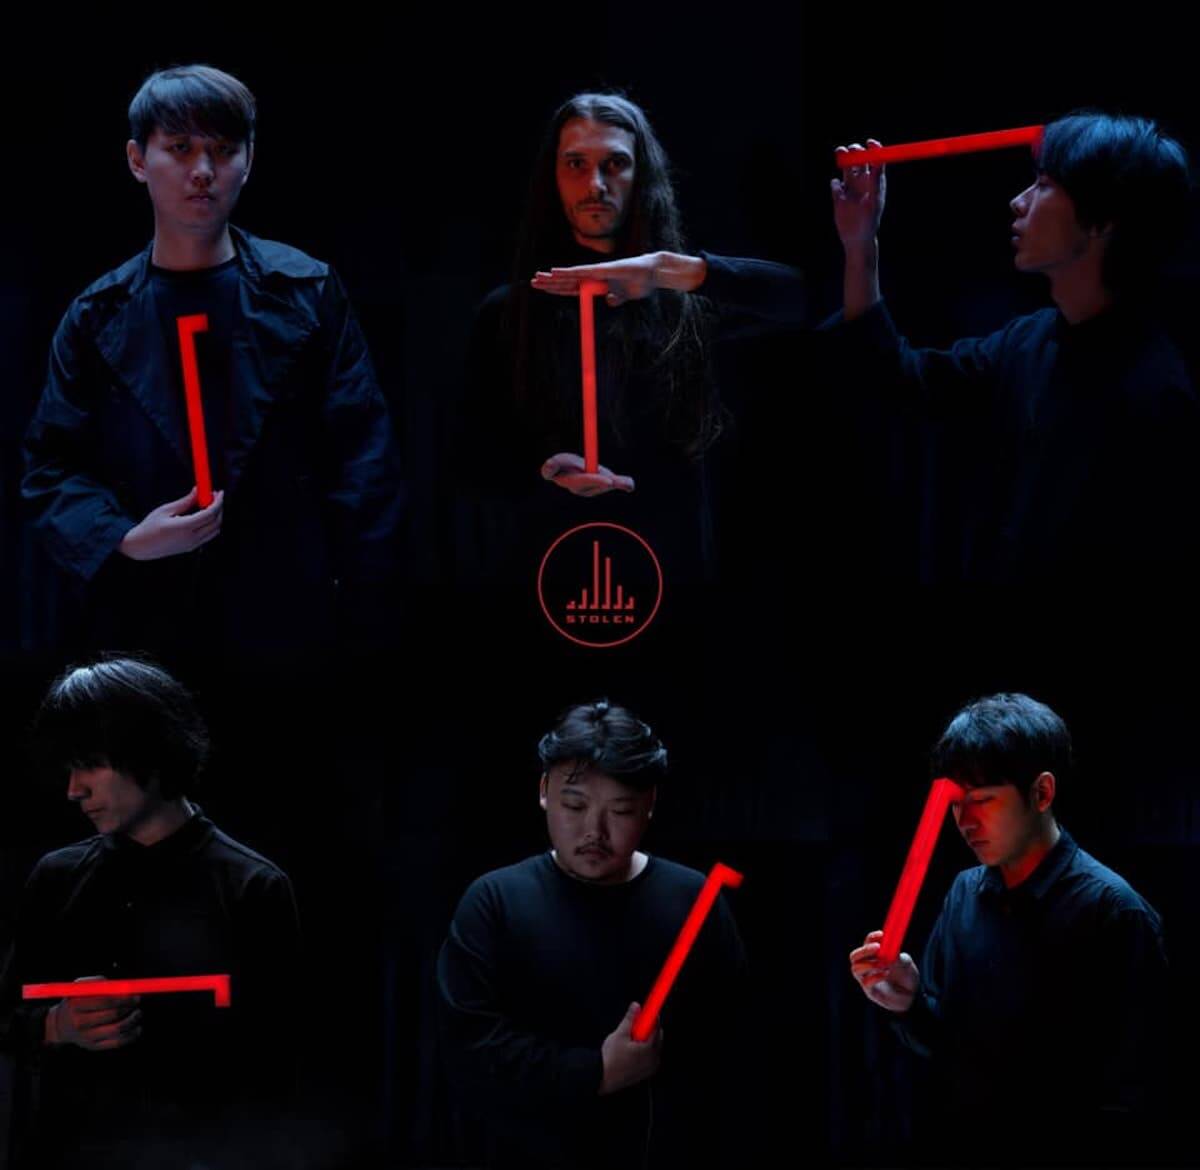 電気グルーヴ 石野卓球も参加 中国の新鋭インディーズバンド Stolenが日本でアルバムリリース Qetic